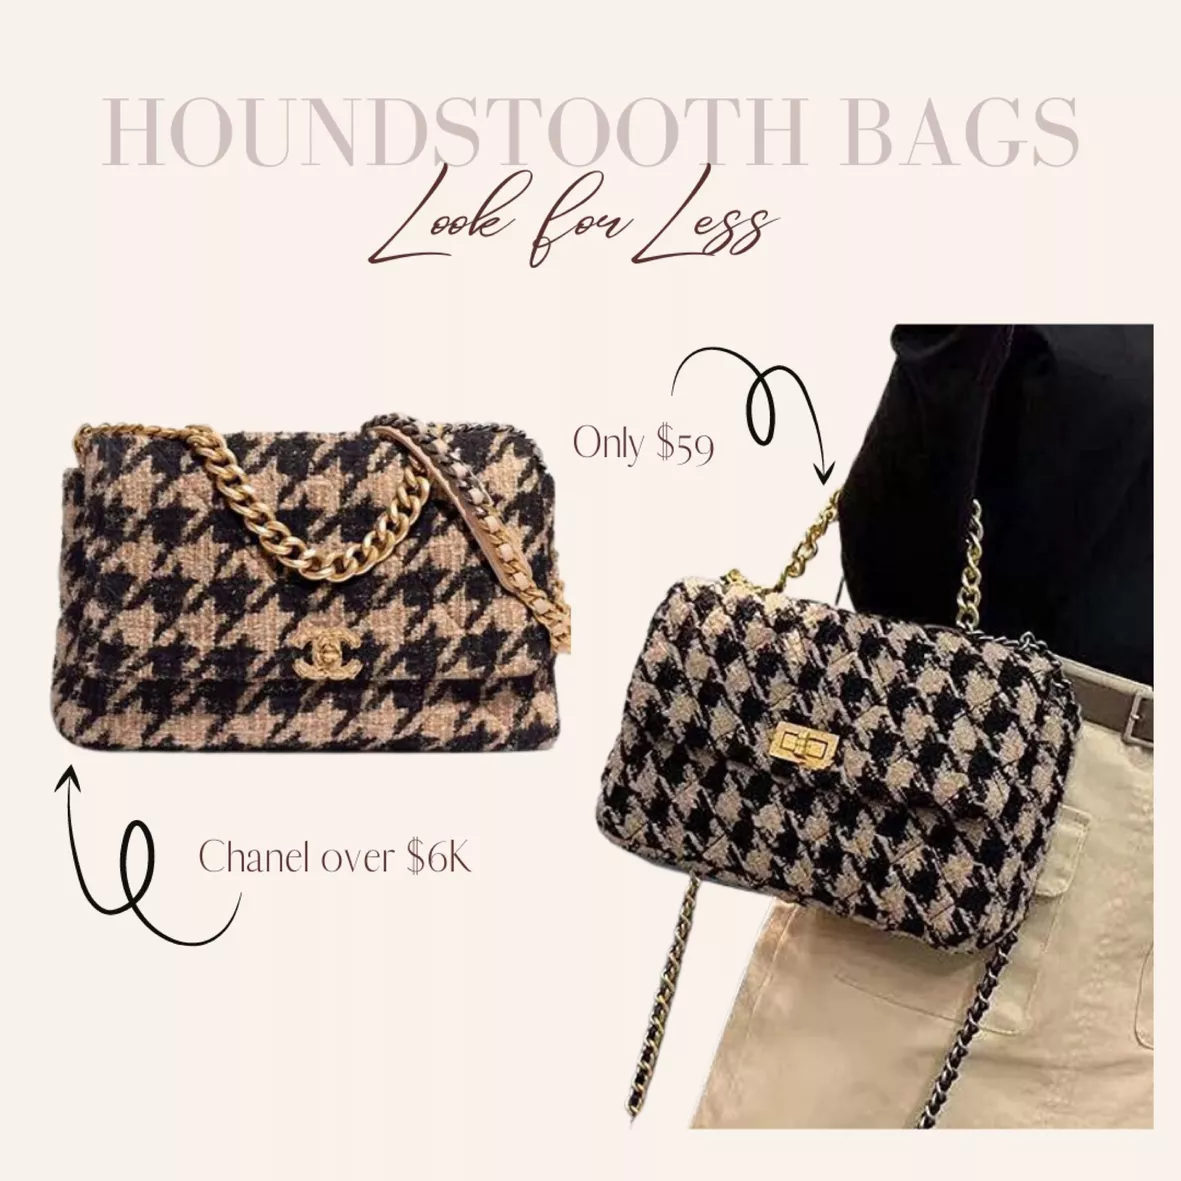 Chanel 19 tweed handbag curated on LTK